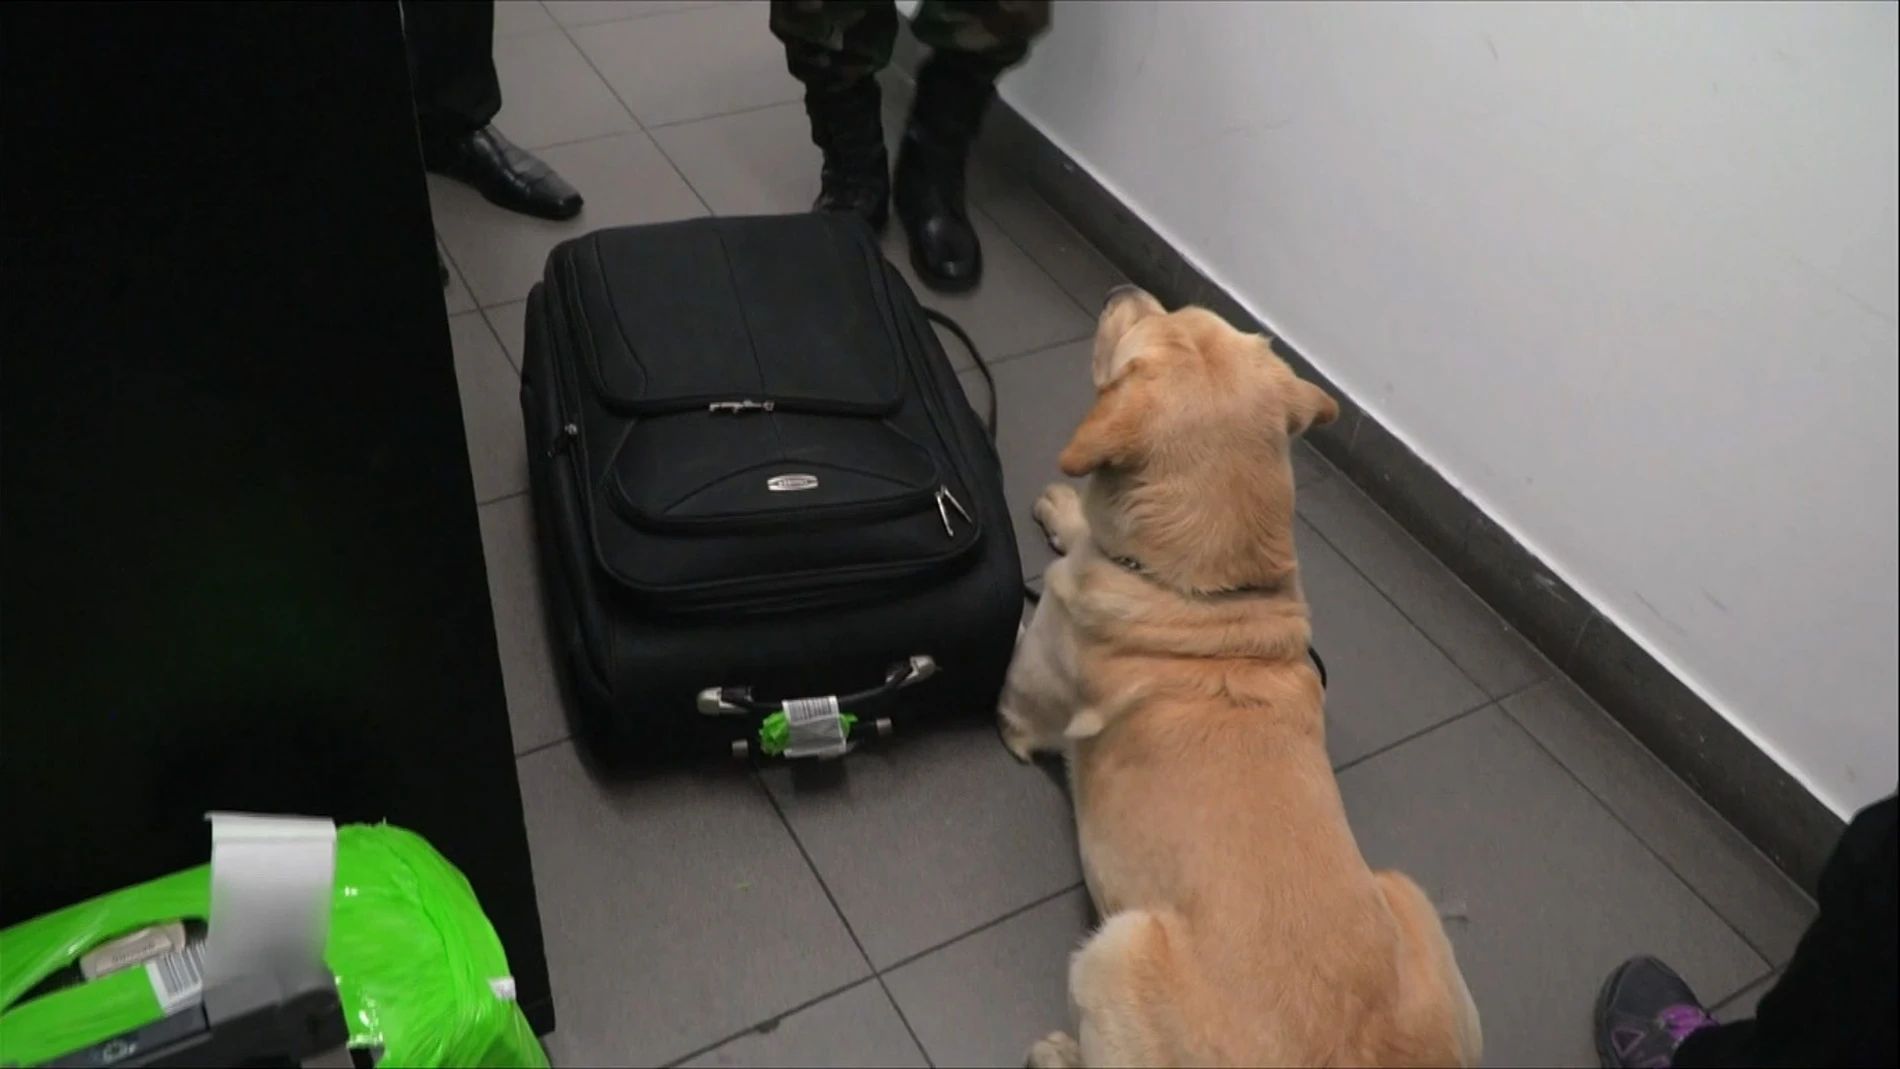 Un perro policía descubre droga en una maleta